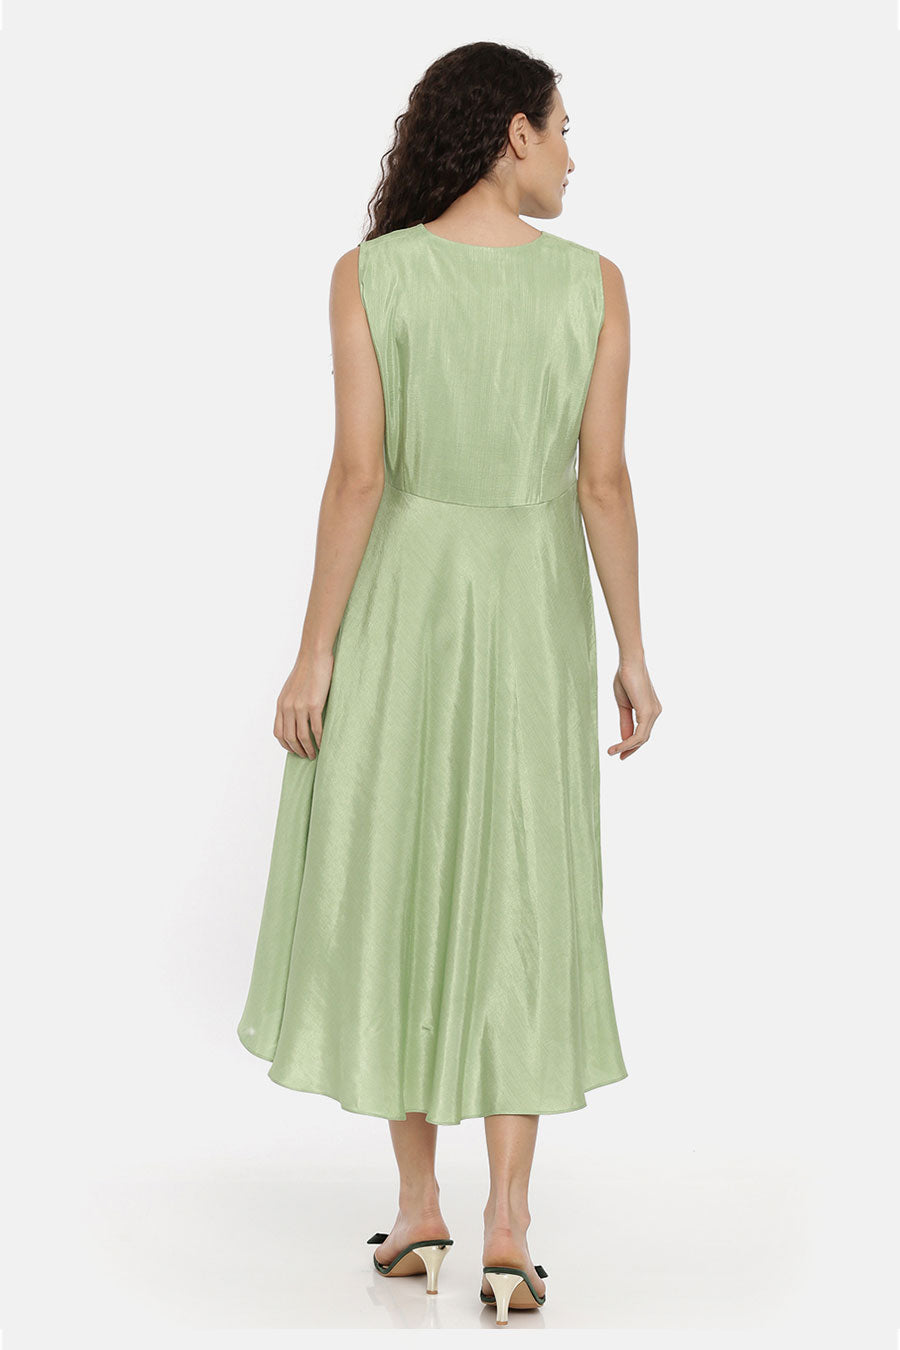 Green Asymmetrical Drape Dress